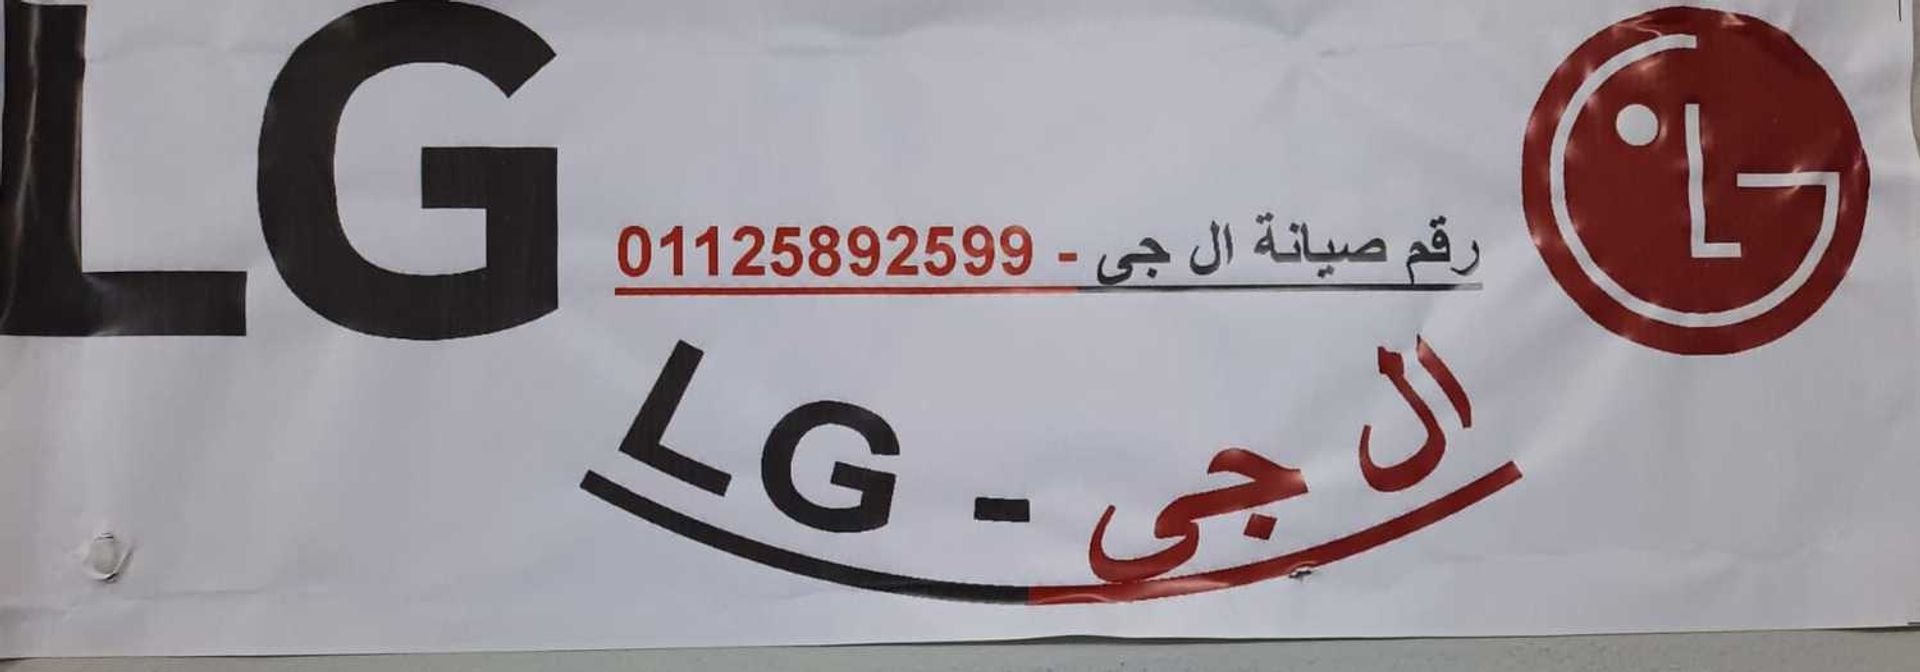 توكيل اصلاح ثلاجة LG ابو حماد 01112124913